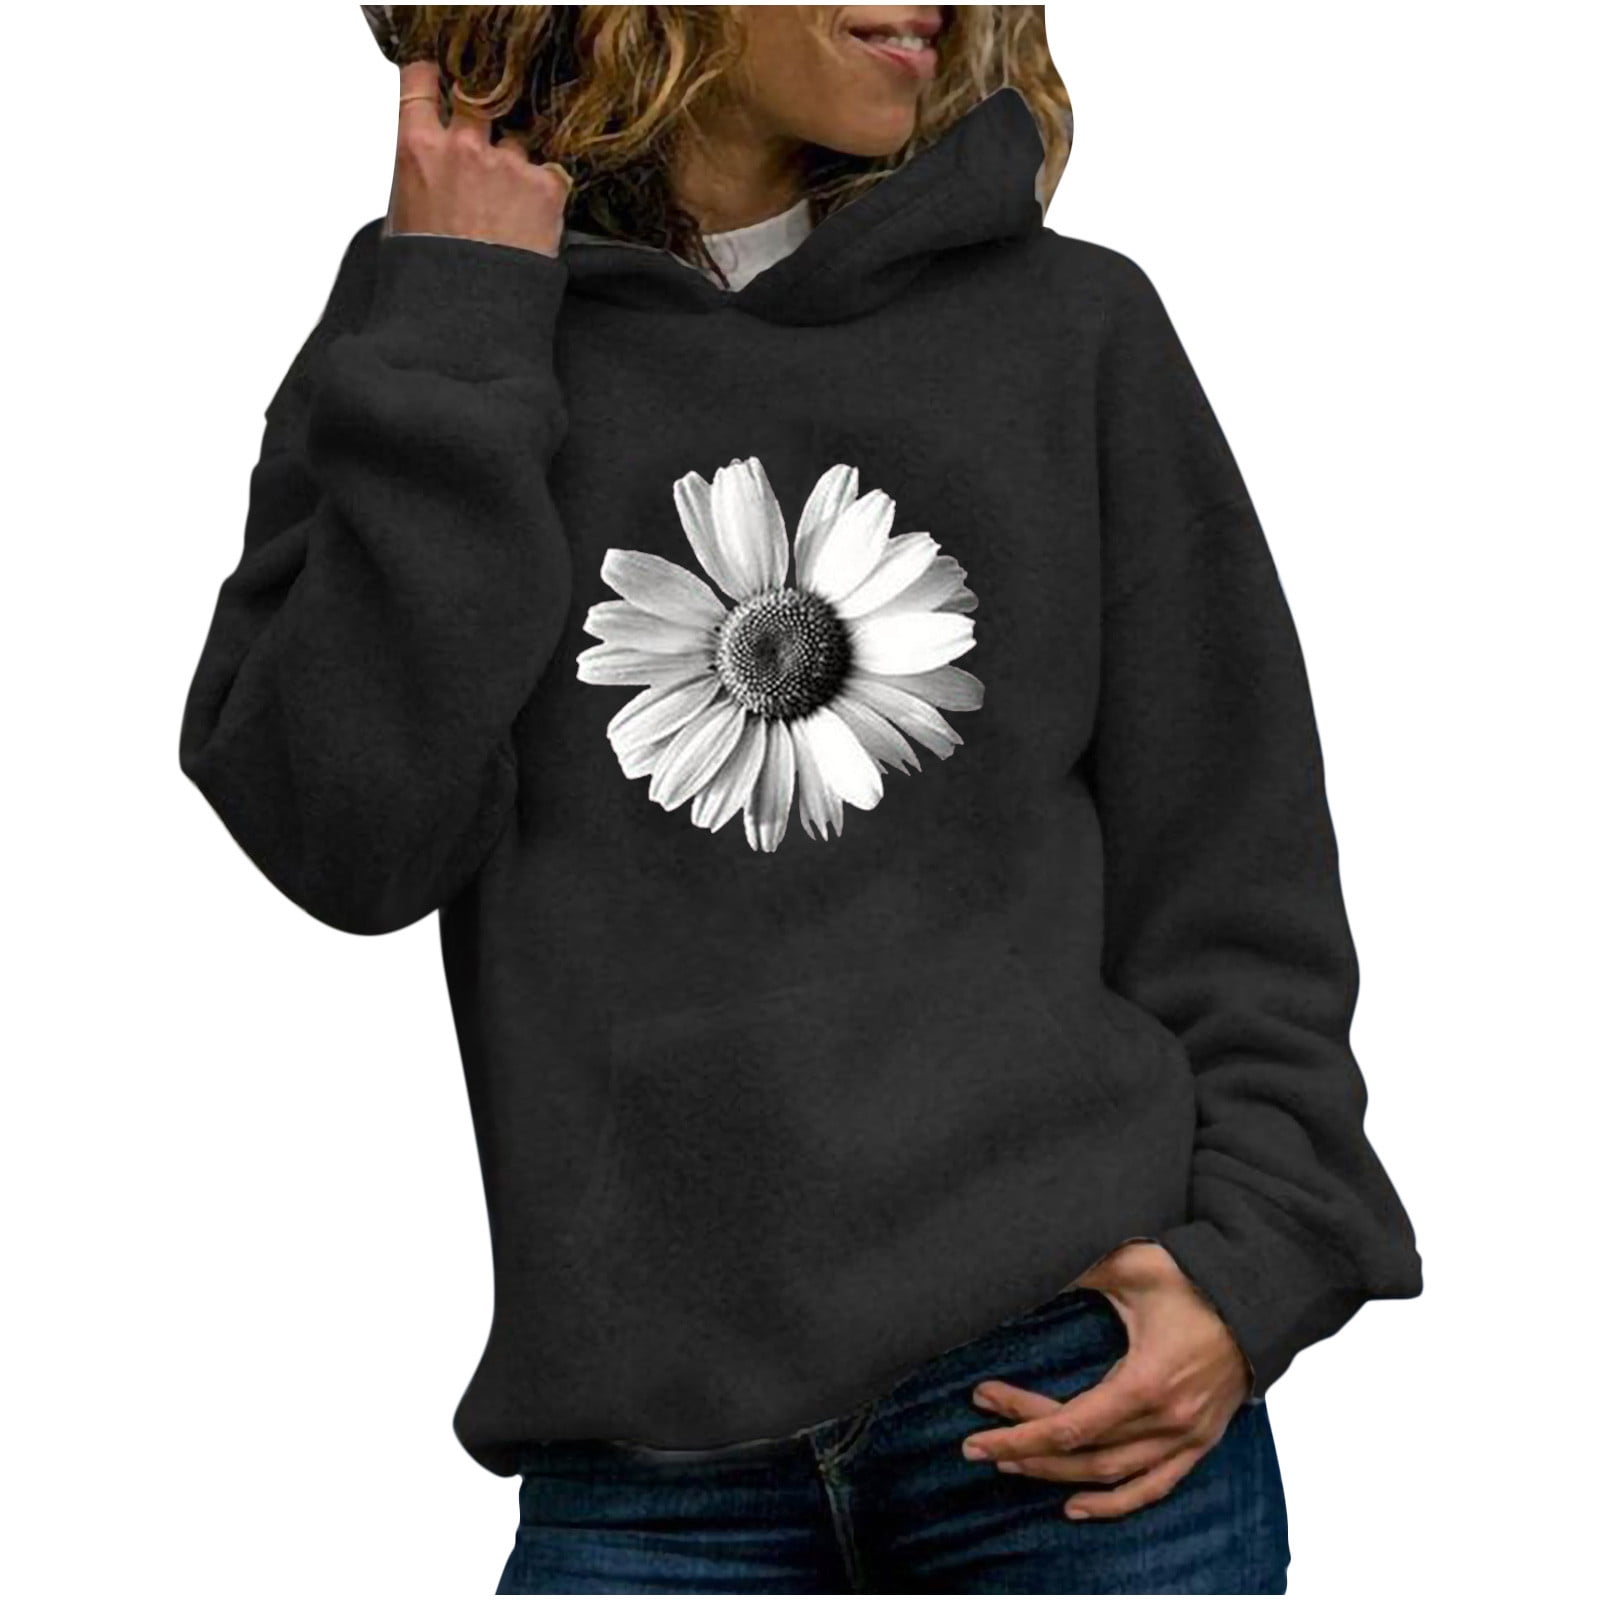 Yyeselk Womens Tops Pullover Hoodies Jumper Tops Sunflower Print Sweatshirt  Hooded Sweater